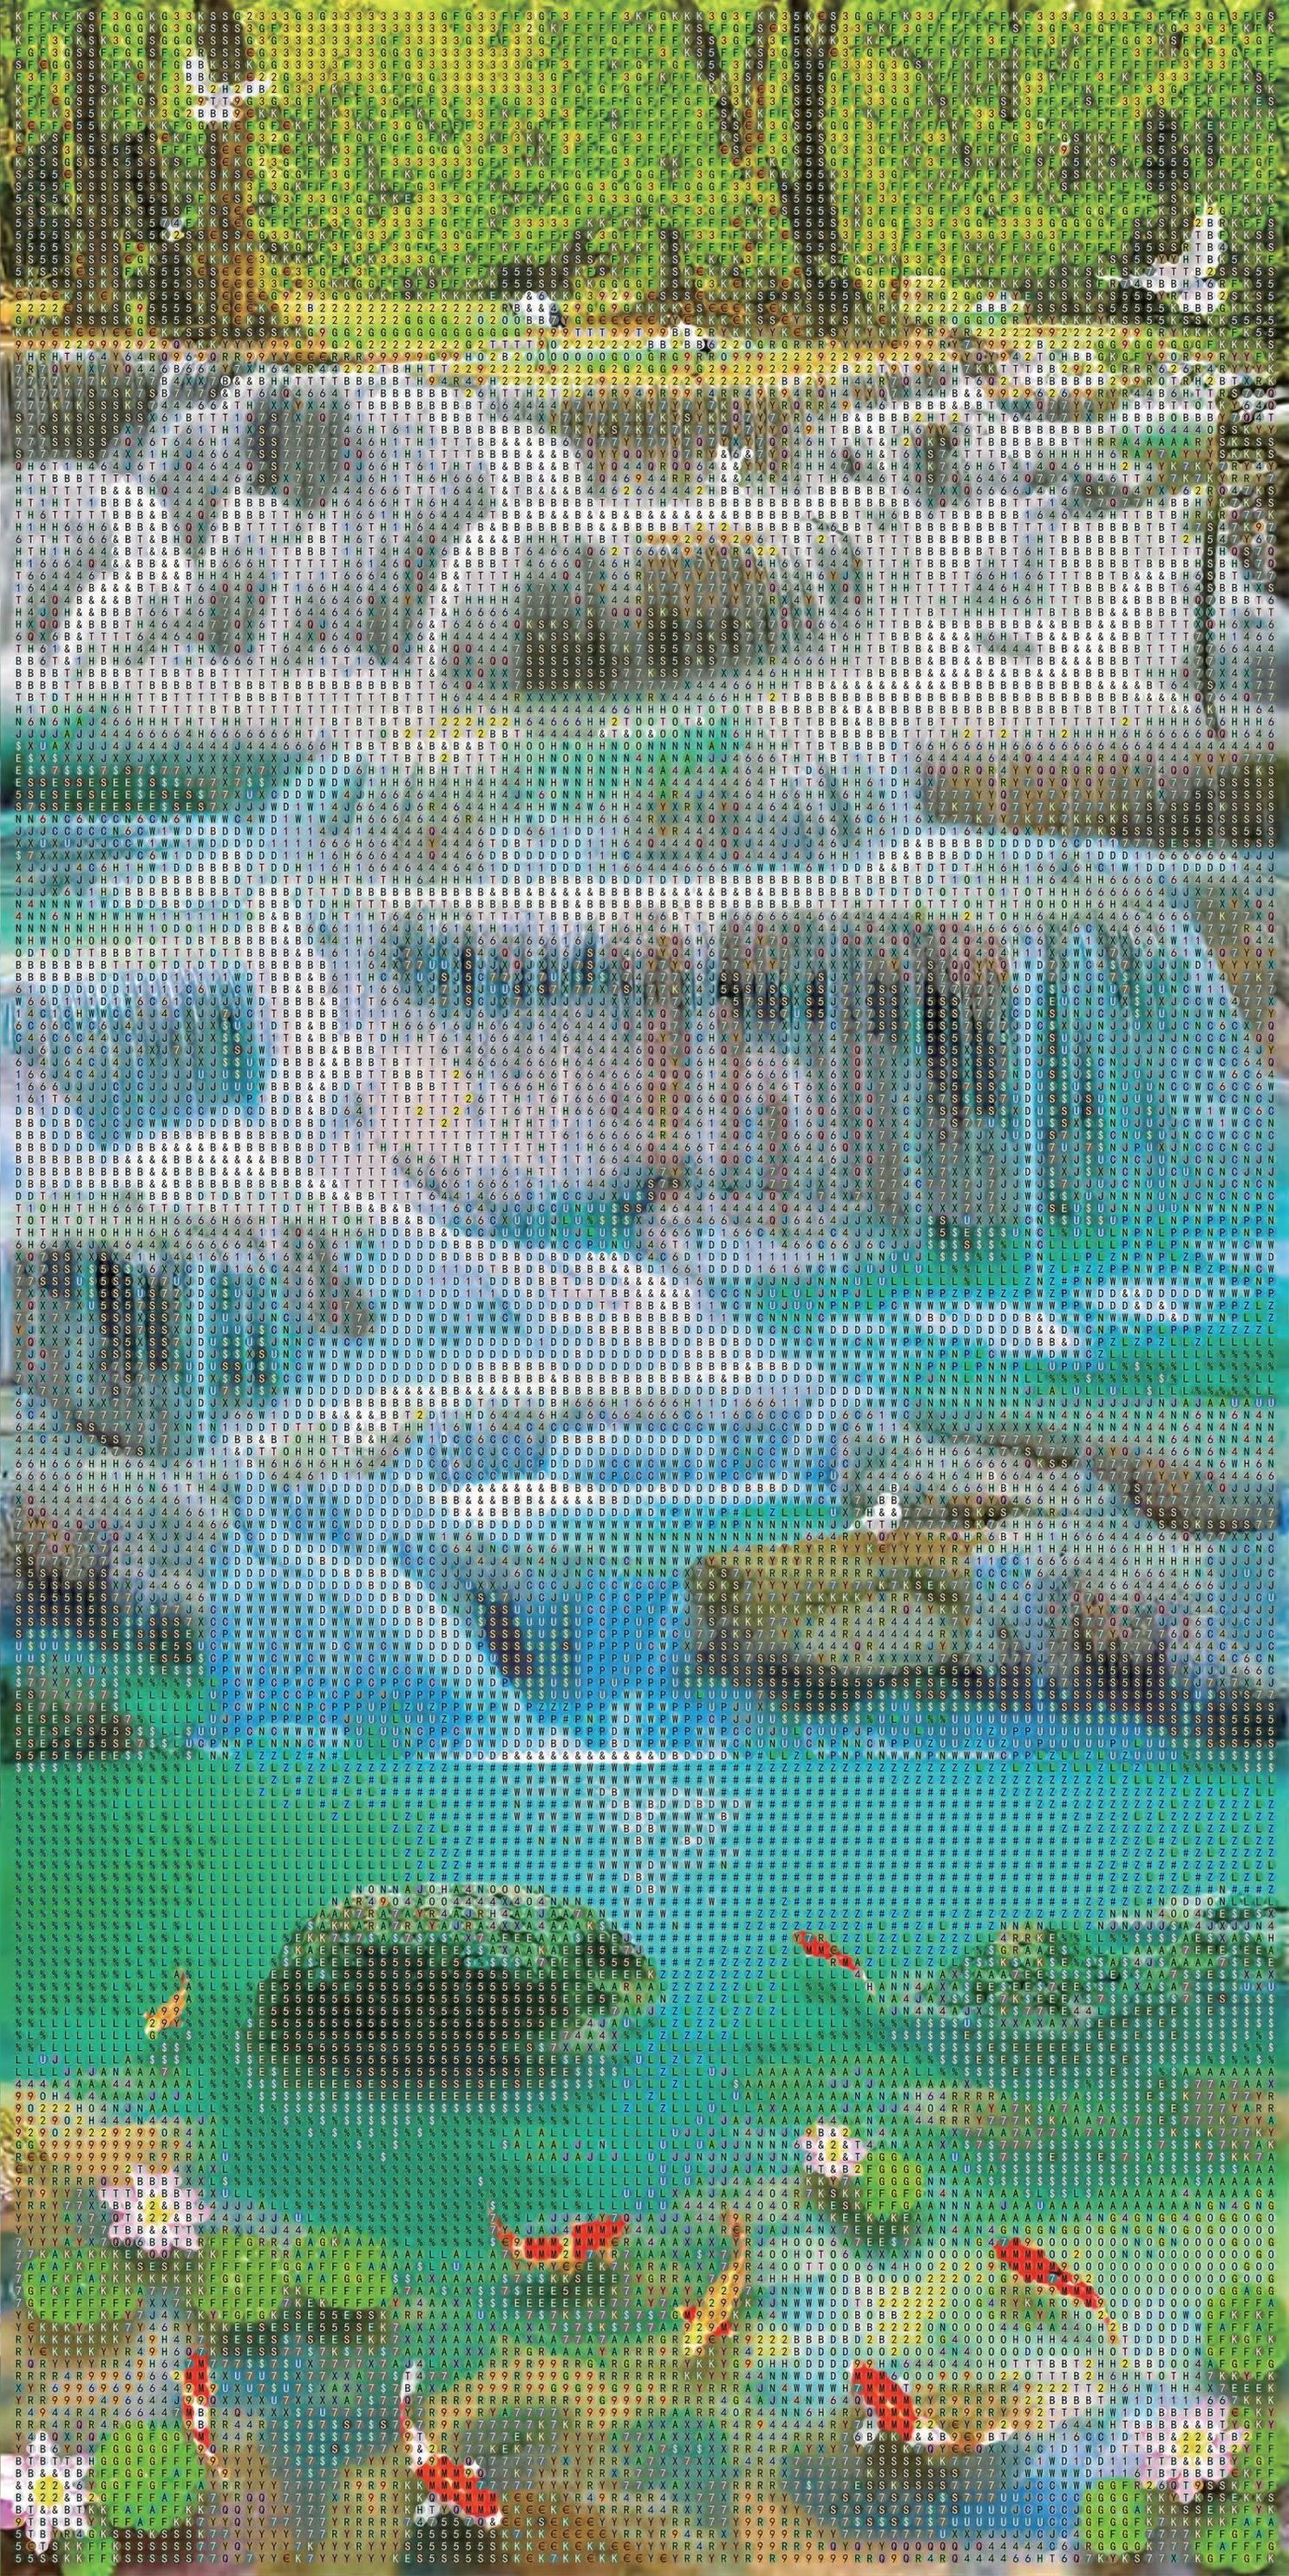 Diamond Painting Wasserfall mit Fischen 30 x 60 cm | Weltbild.de